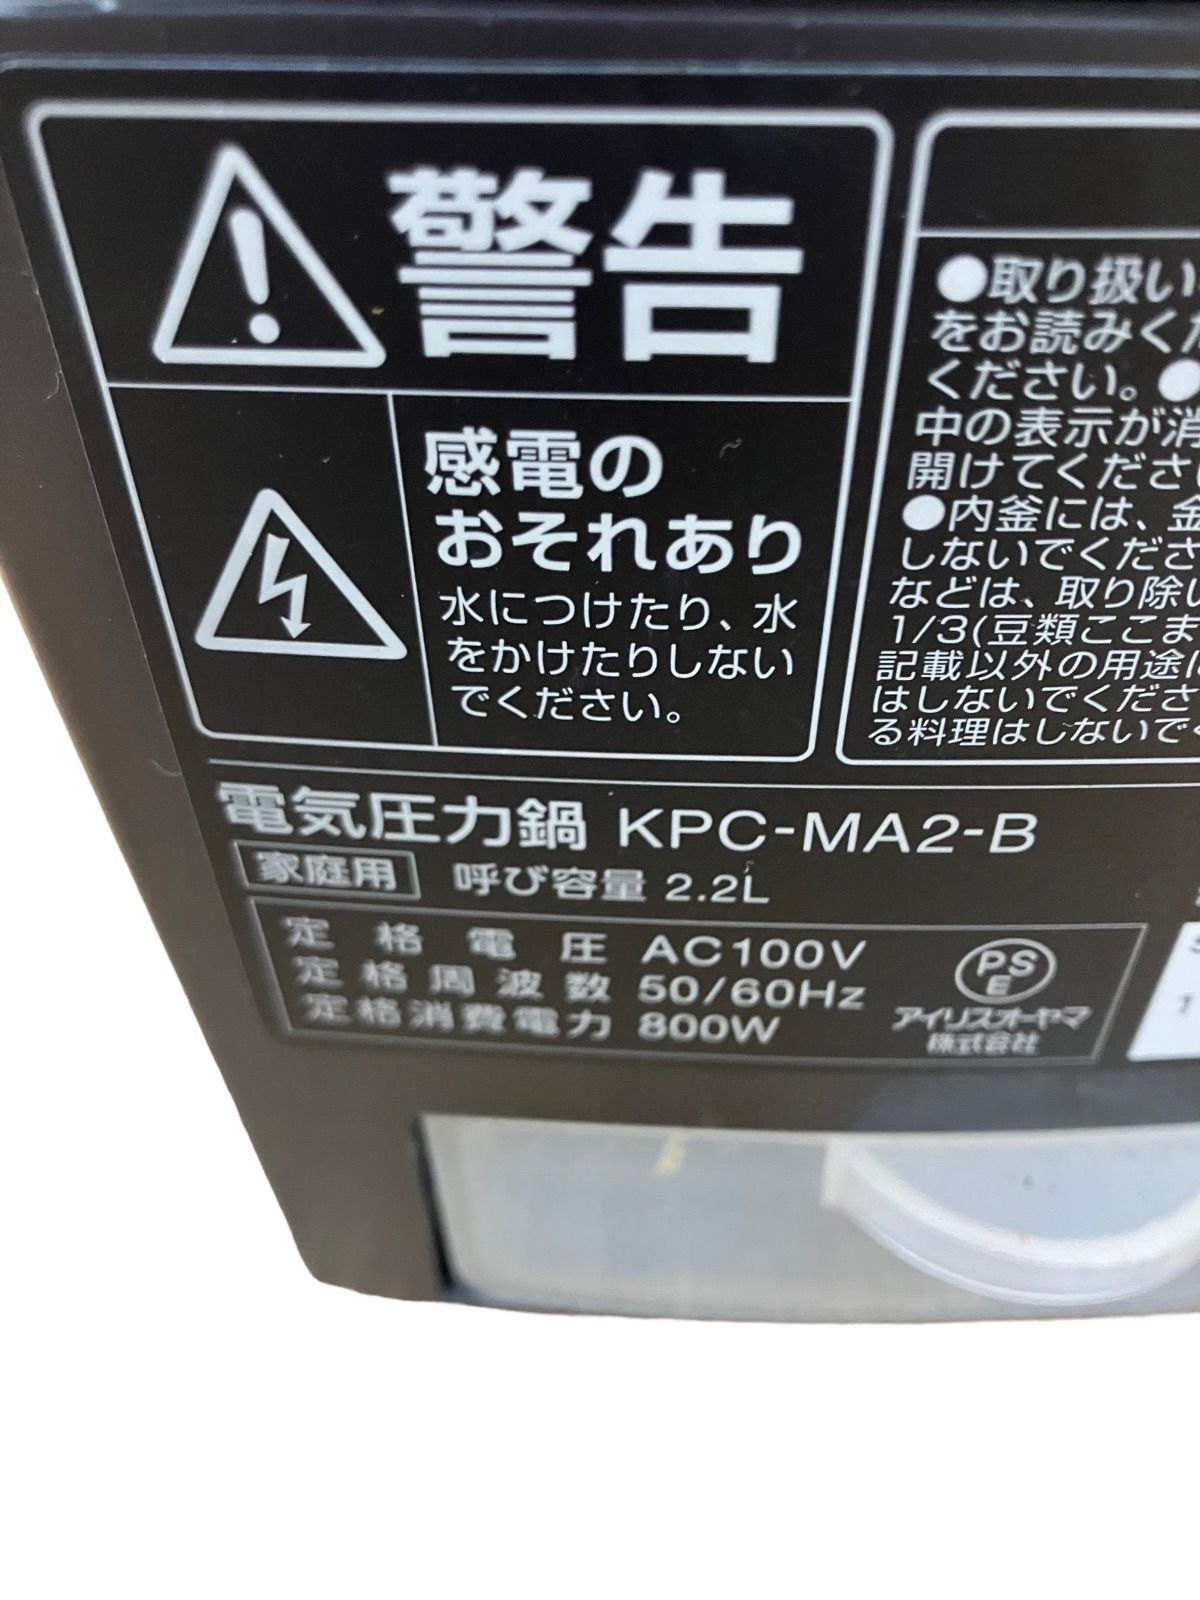 購入しアイリスオーヤマ 電気圧力鍋 KPC-MA2-B 調理機器